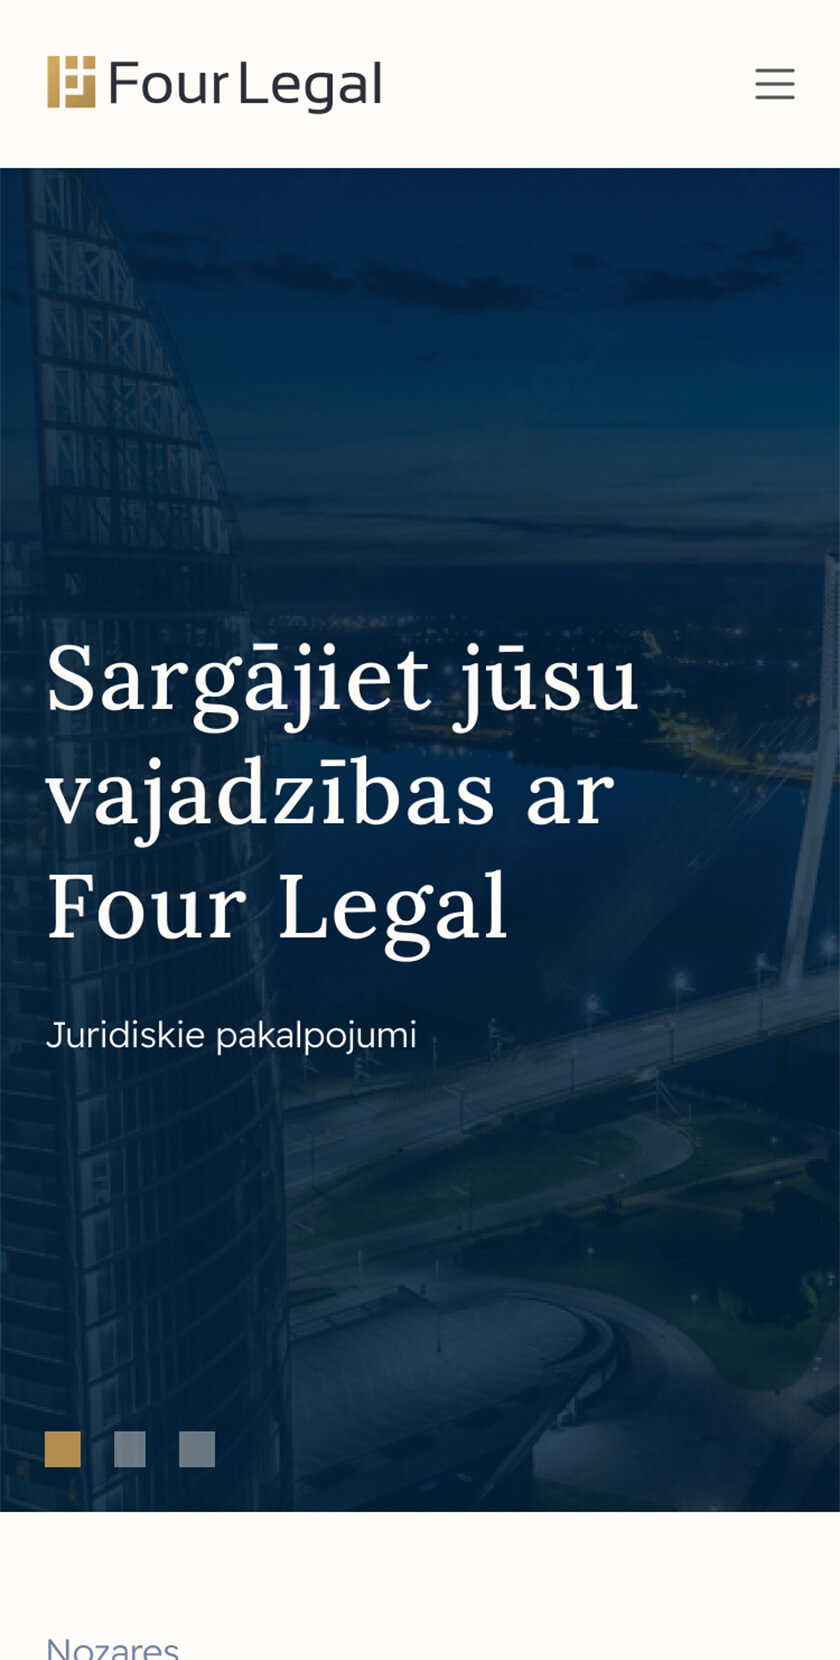 Mobile Screen Header Four Legal Juridiskie Pakalpojumi Majaslapas Izveide Homepage